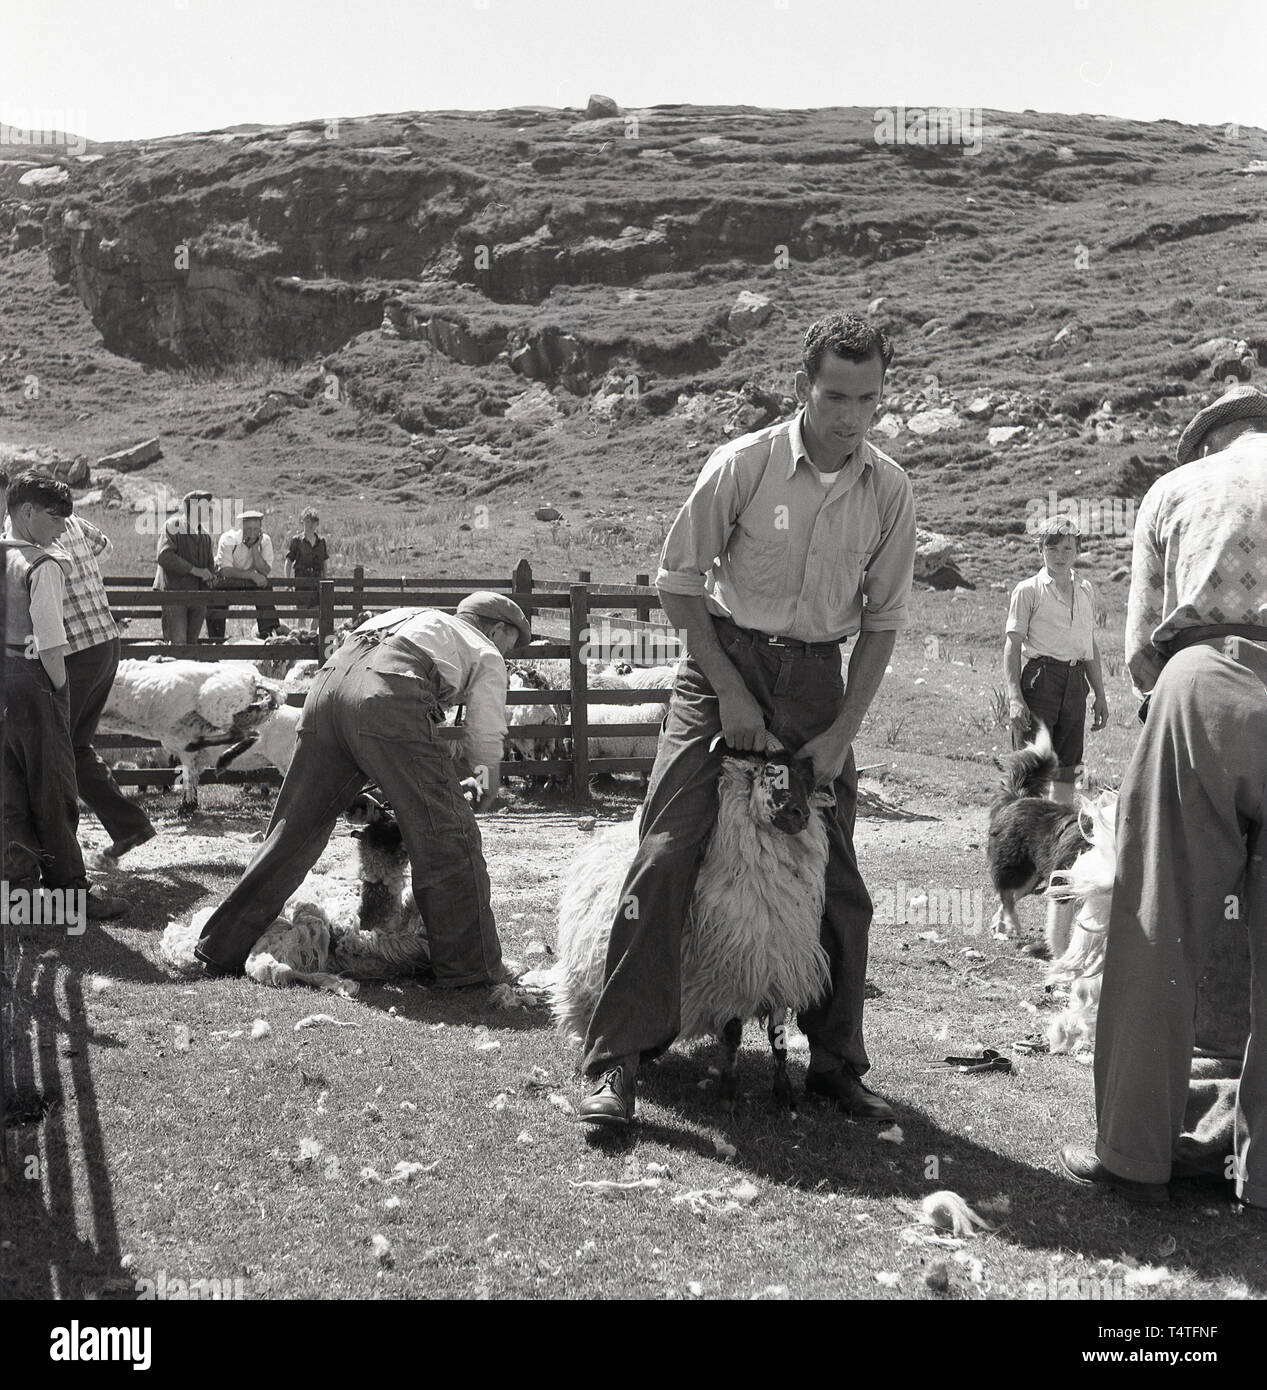 1960, historische, Schafe scheren, UK. Draußen auf einem Stück Land, auf einem Hügel, ein 57309 Holding ein Schaf mit seinen Hörnern vor Scheren. Stockfoto